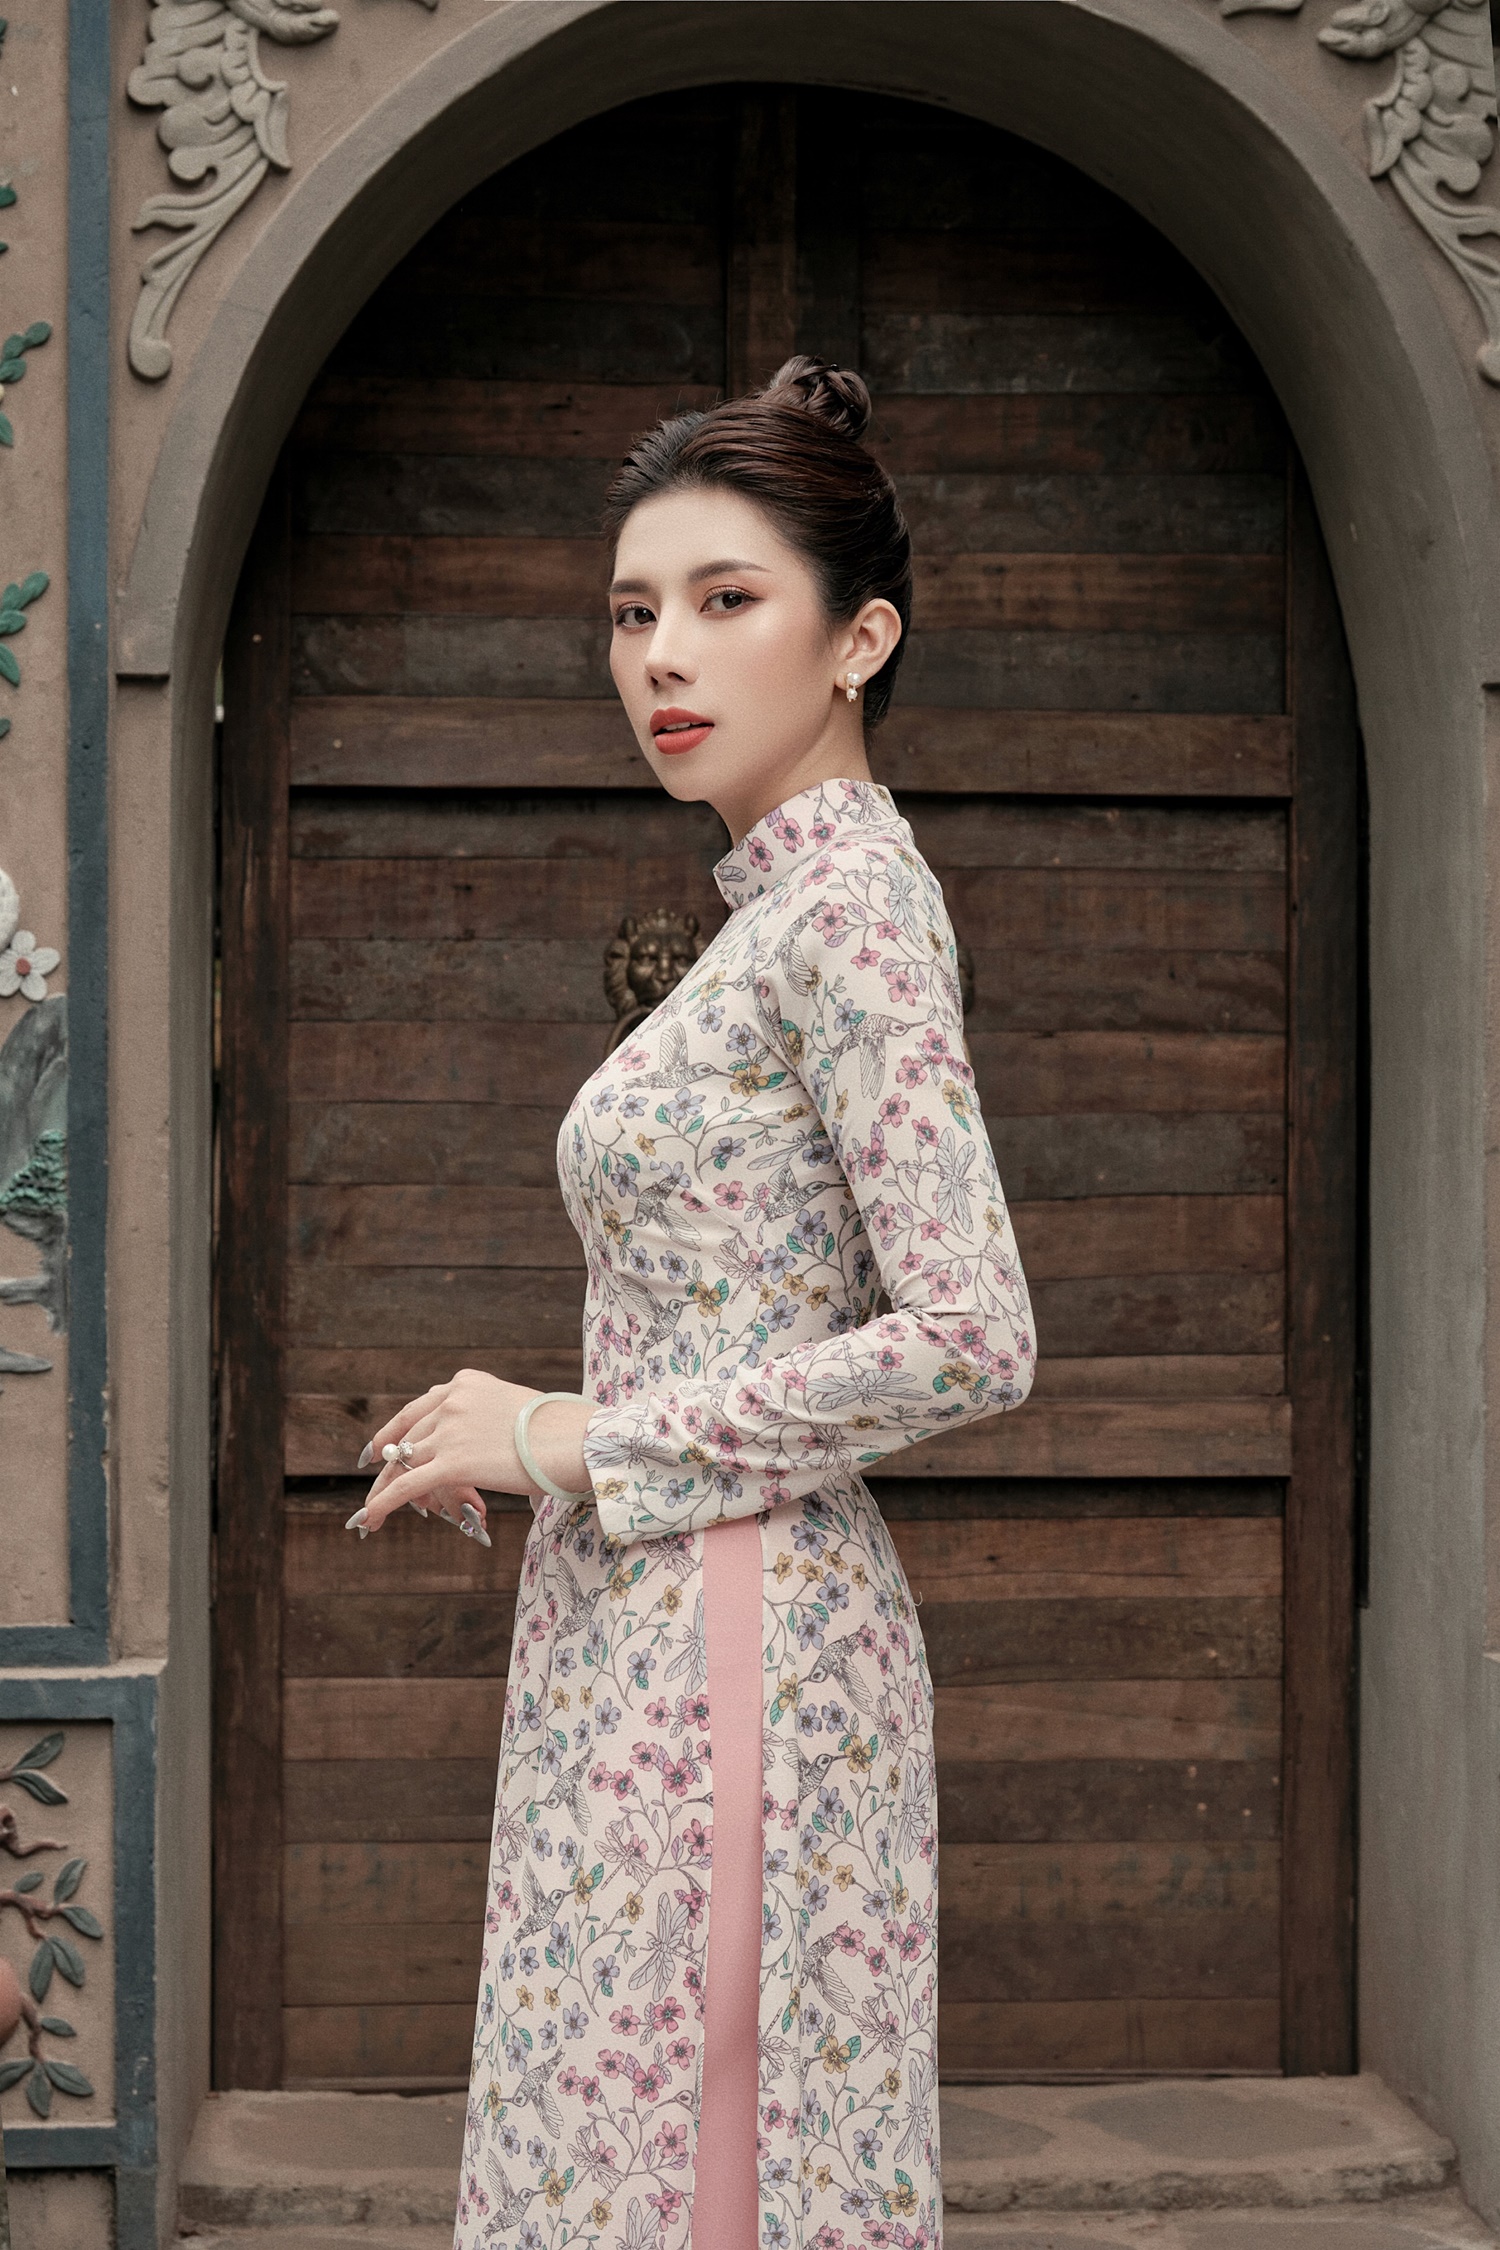 Hoa hậu Dương Yến Nhung luôn quan niệm phụ nữ thành công không chỉ có nhan sắc, có phong cách ăn mặc thời trang mà còn phải là người không ngừng học hỏi và cố gắng trong công việc. Vì thế, thời gian tới, nàng hậu còn có hàng loạt kế hoạch làm việc song song với trau dồi kỹ năng.  